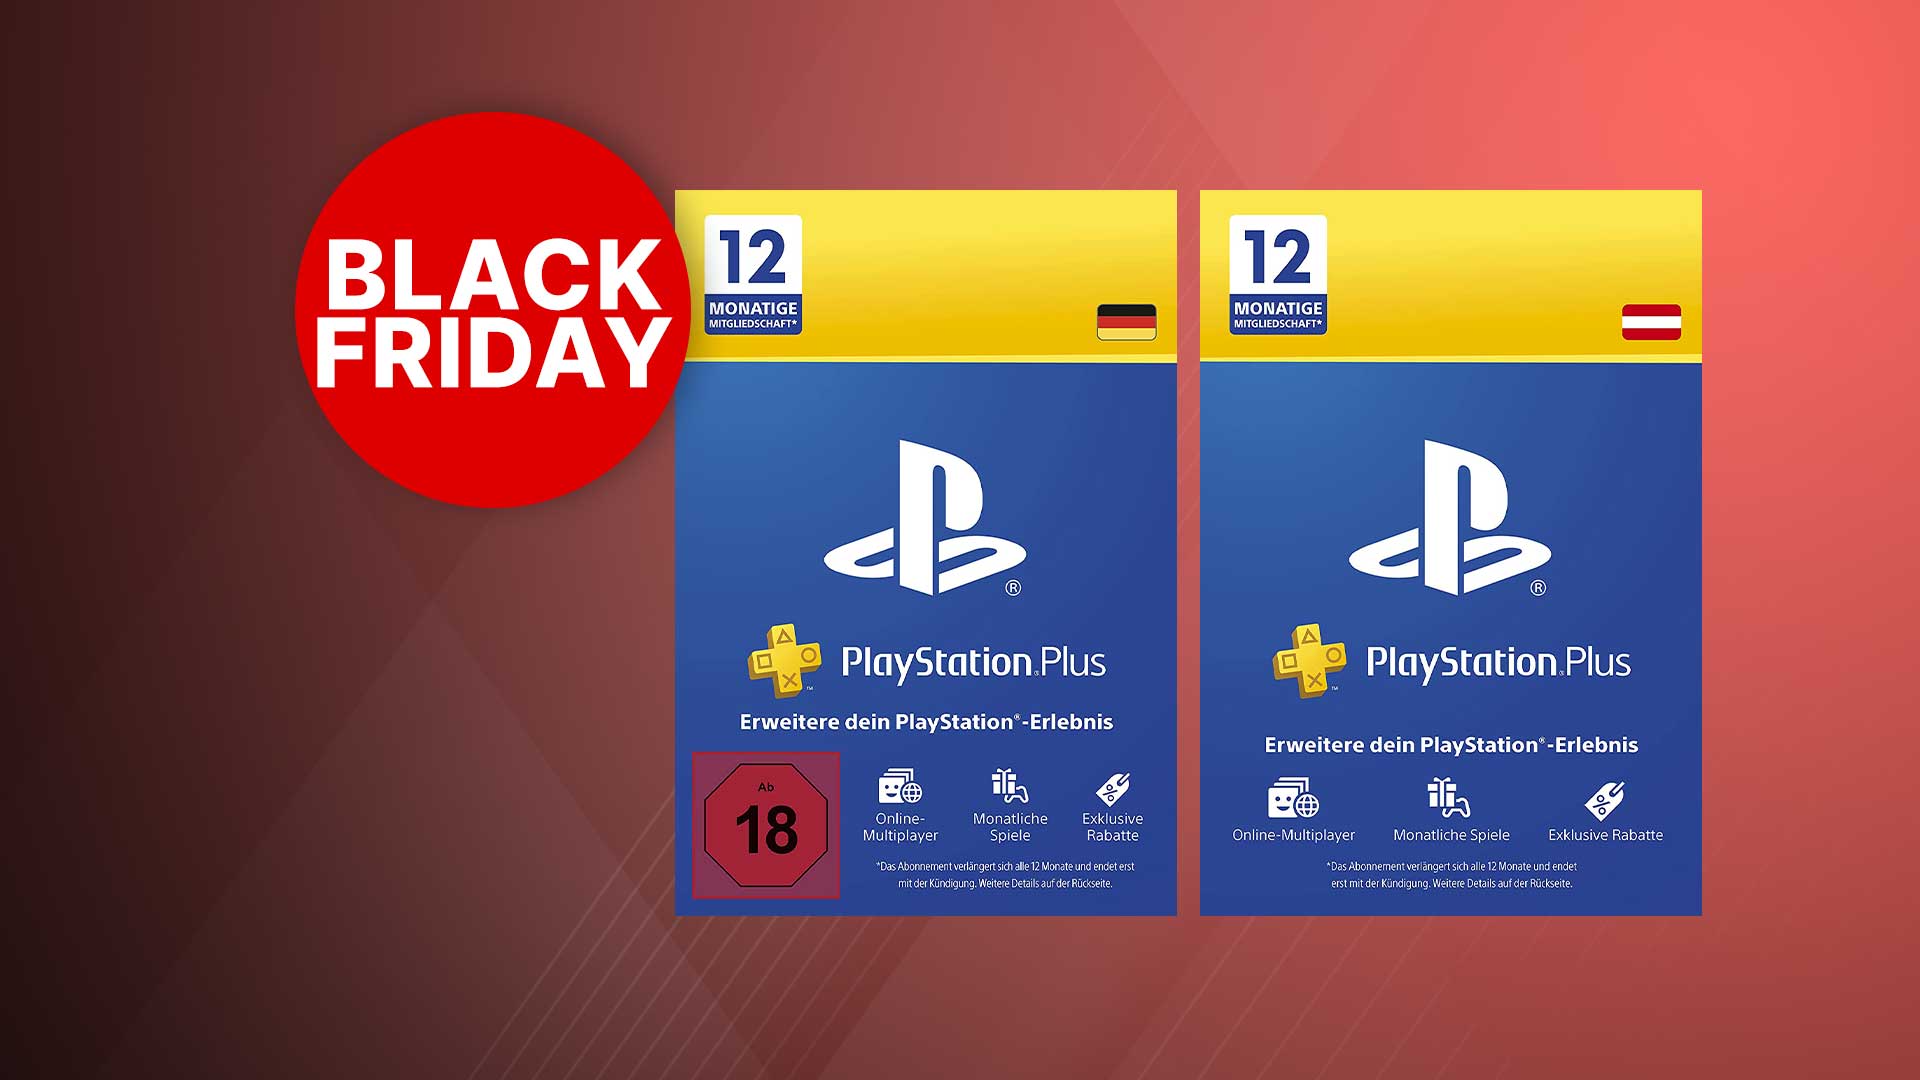 Subscrição de 12 meses do Playstation Plus alia-se à Black Friday